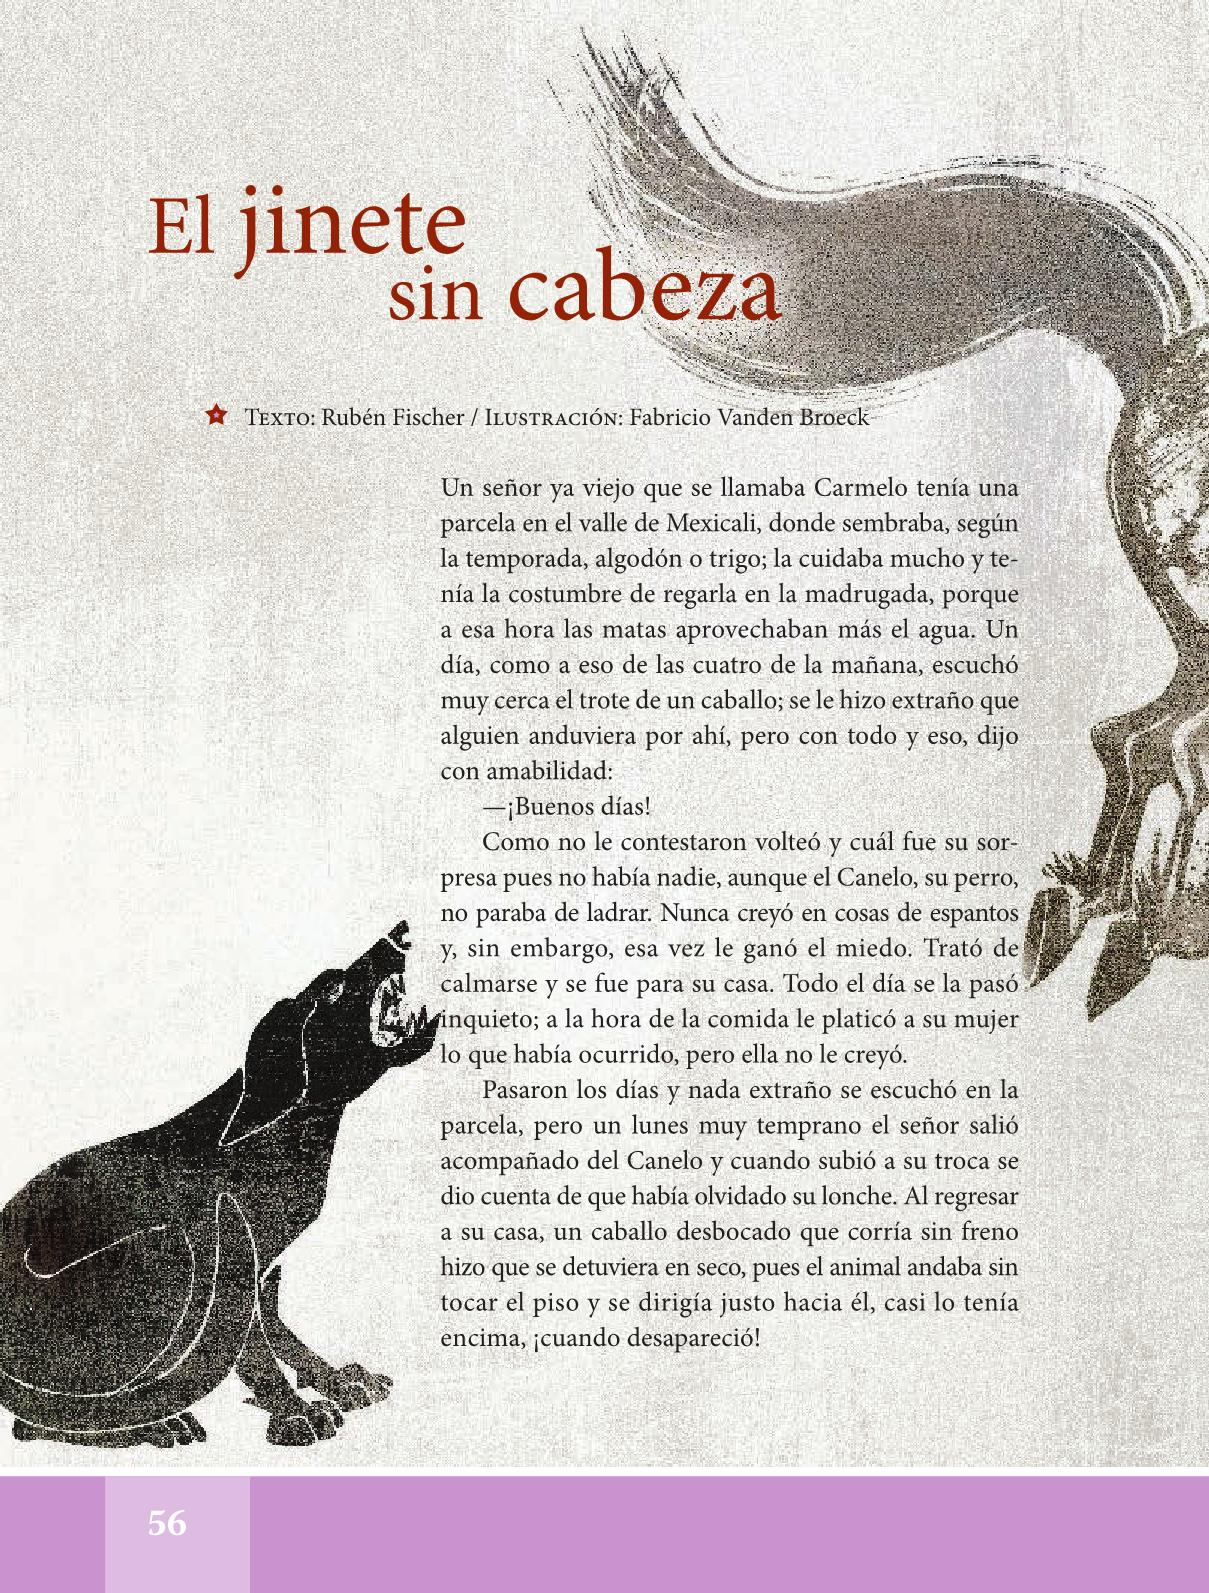 Pagina 34 De Español Contestado De 6to Grado | Libro Gratis